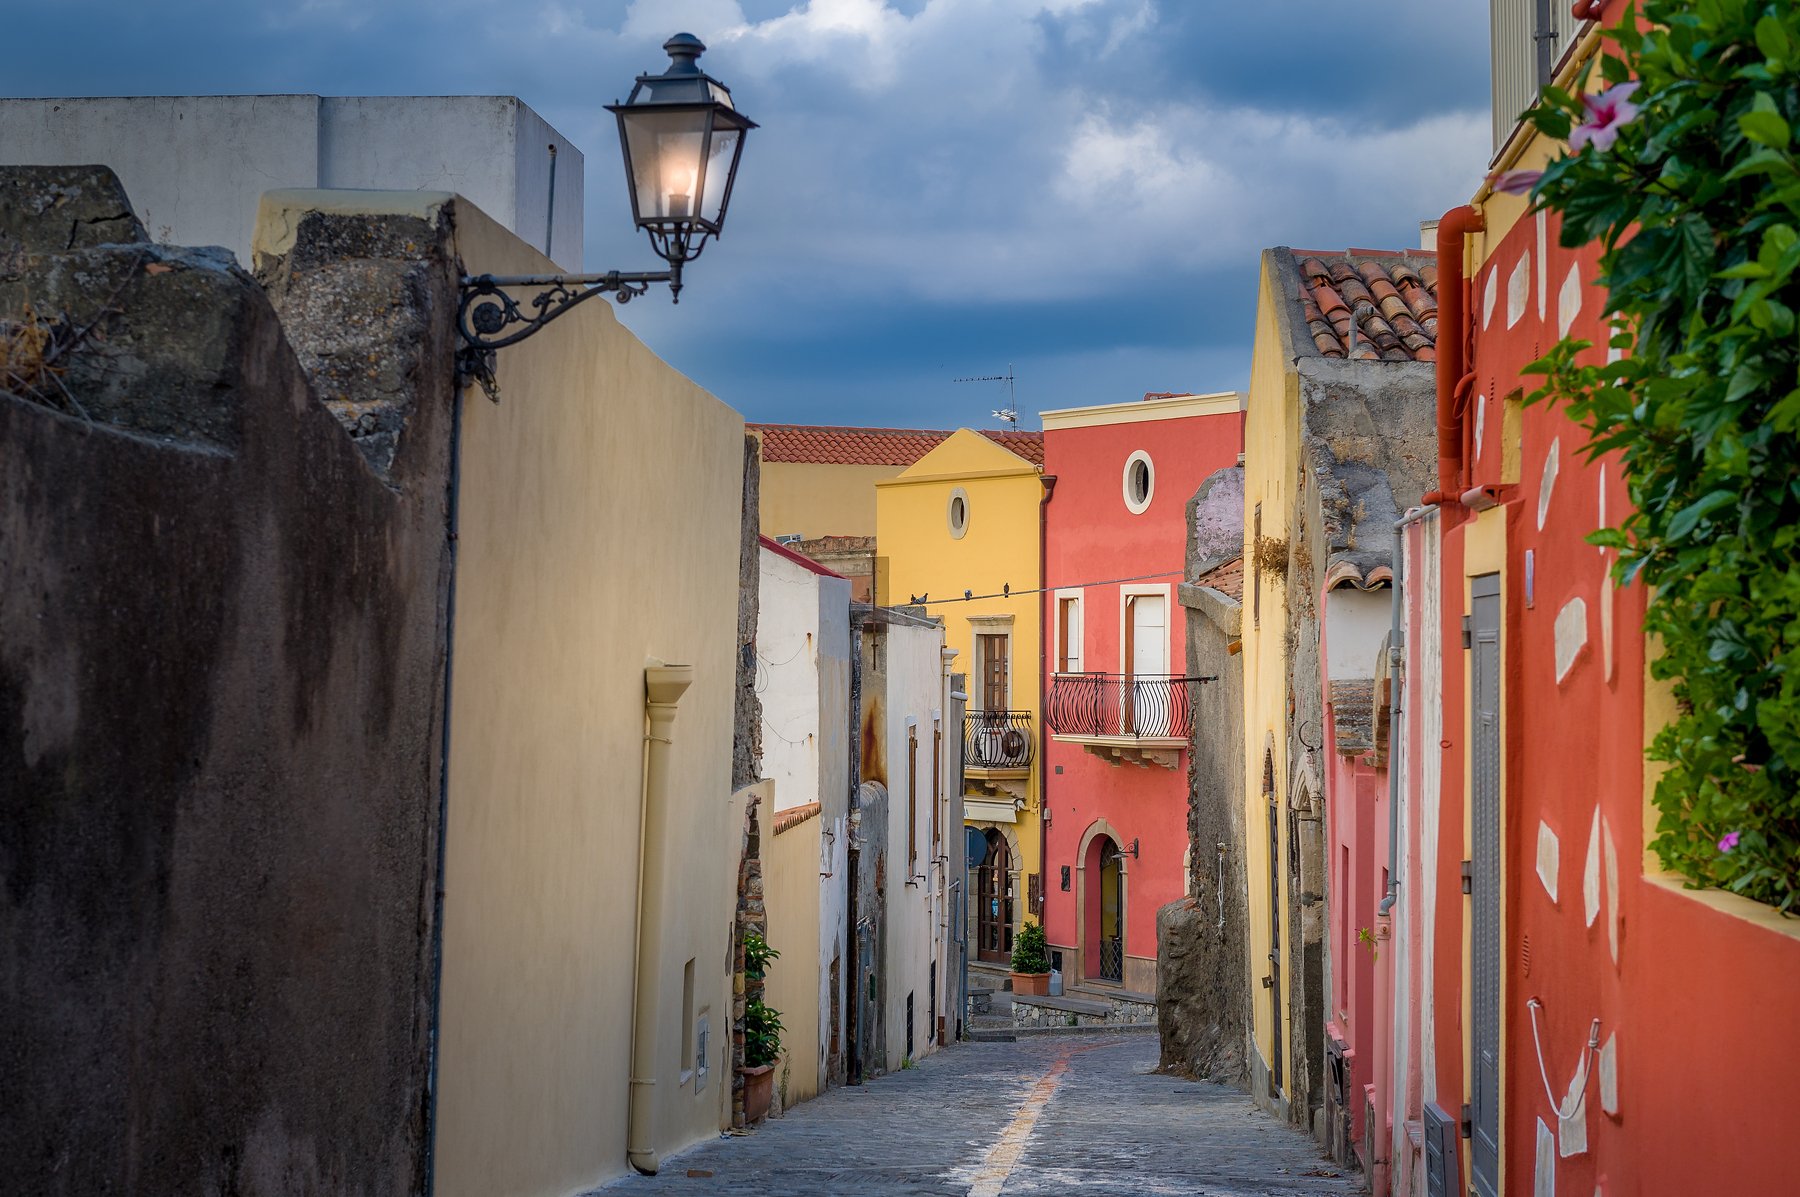 Сицилия, улица, дома, фонарь, яркие, дома, разноцветные, Италия, узкая, проход, стены, красные, желтые,, NIKIFOROV ALEXANDER